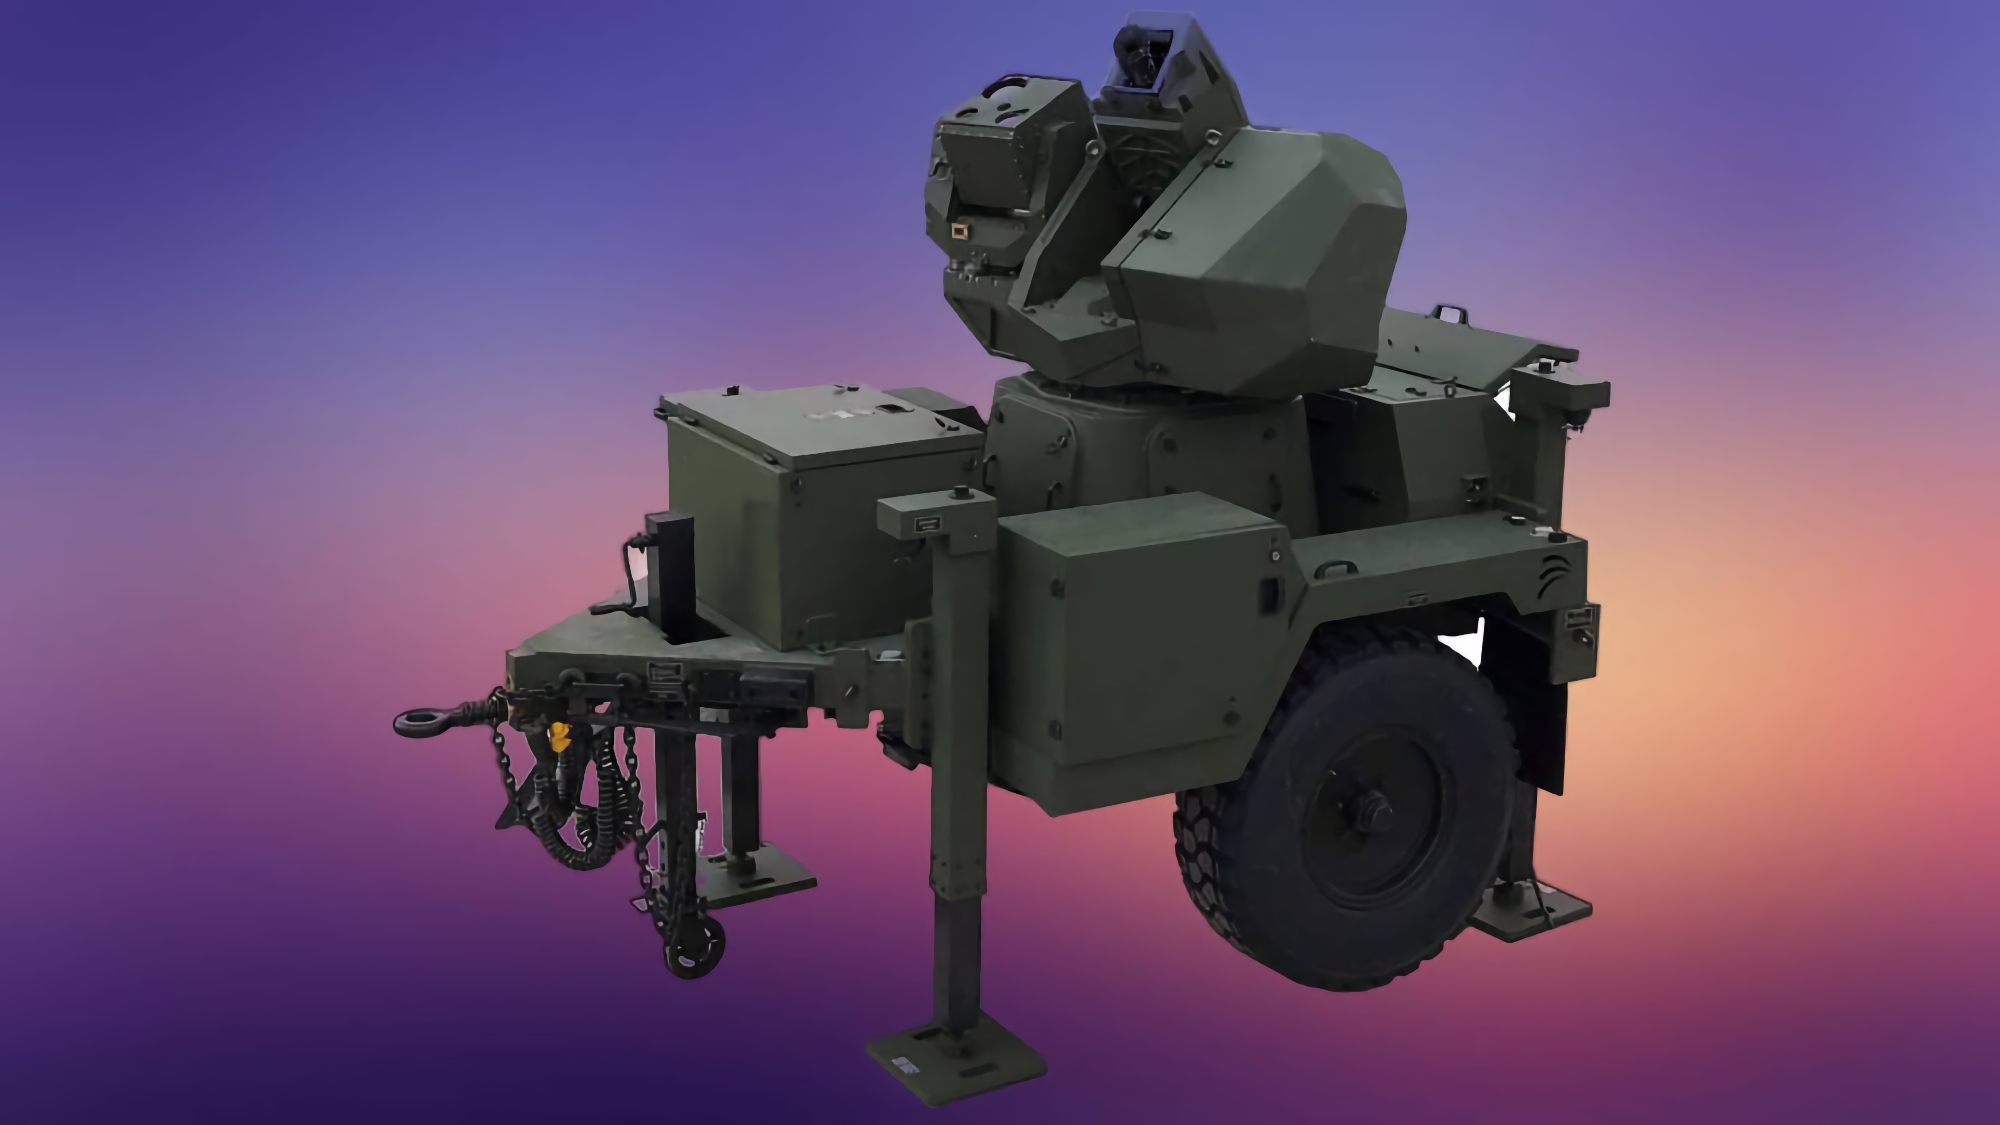 Tureckie wojsko zaczęło używać systemu antydronowego „AHİN z programowalną amunicją”